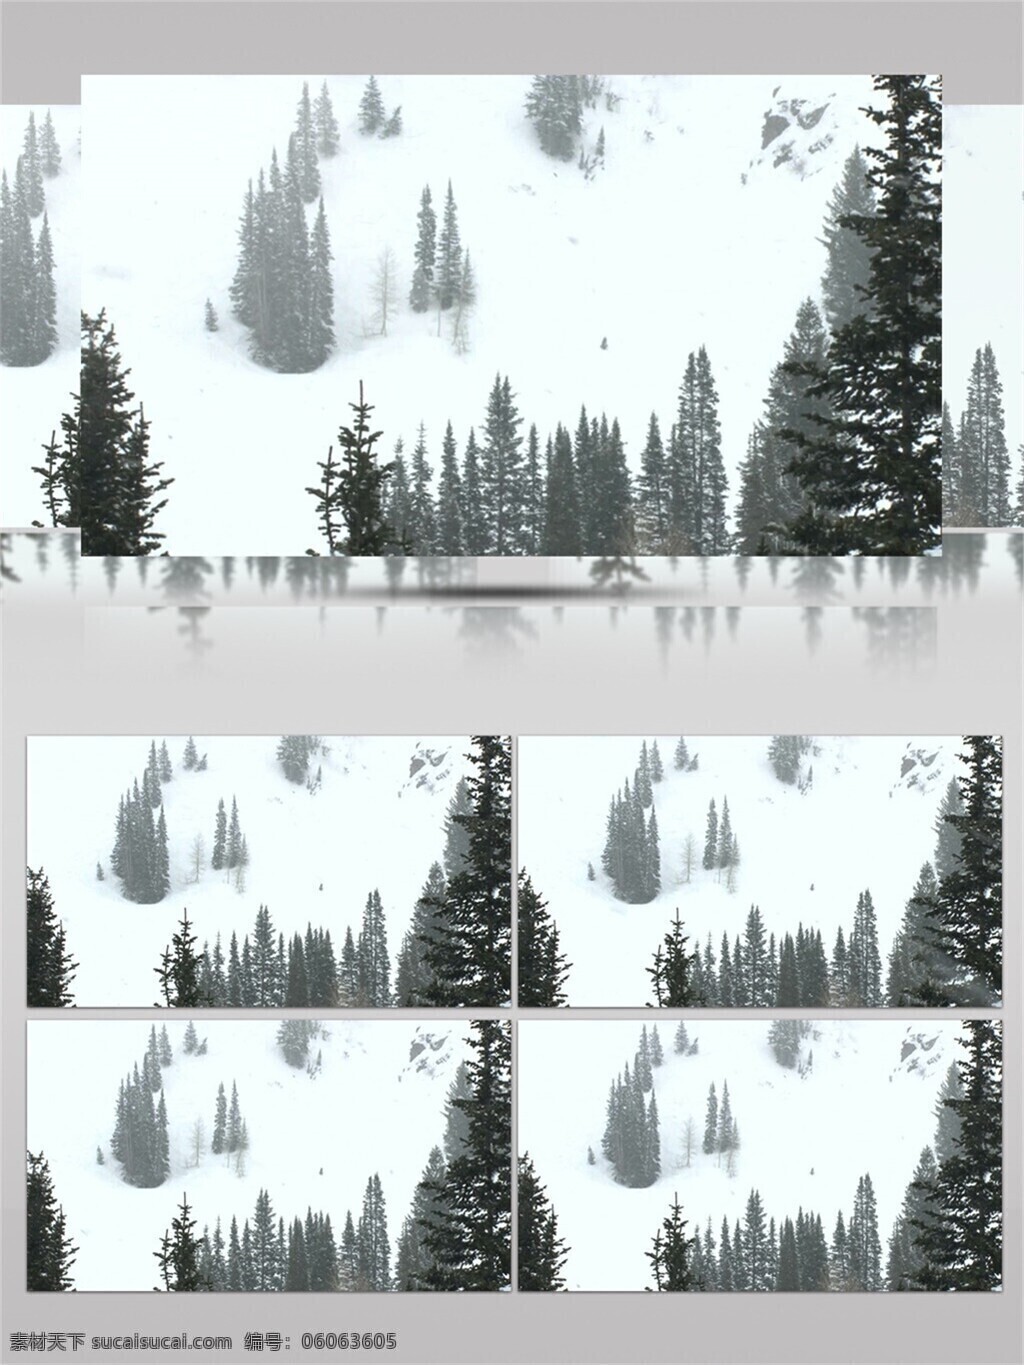 大雪纷飞 白雪 覆盖 松 树林 视频 冬天 冬季 唯美 雪花 雪地 白色 圣诞 飘雪